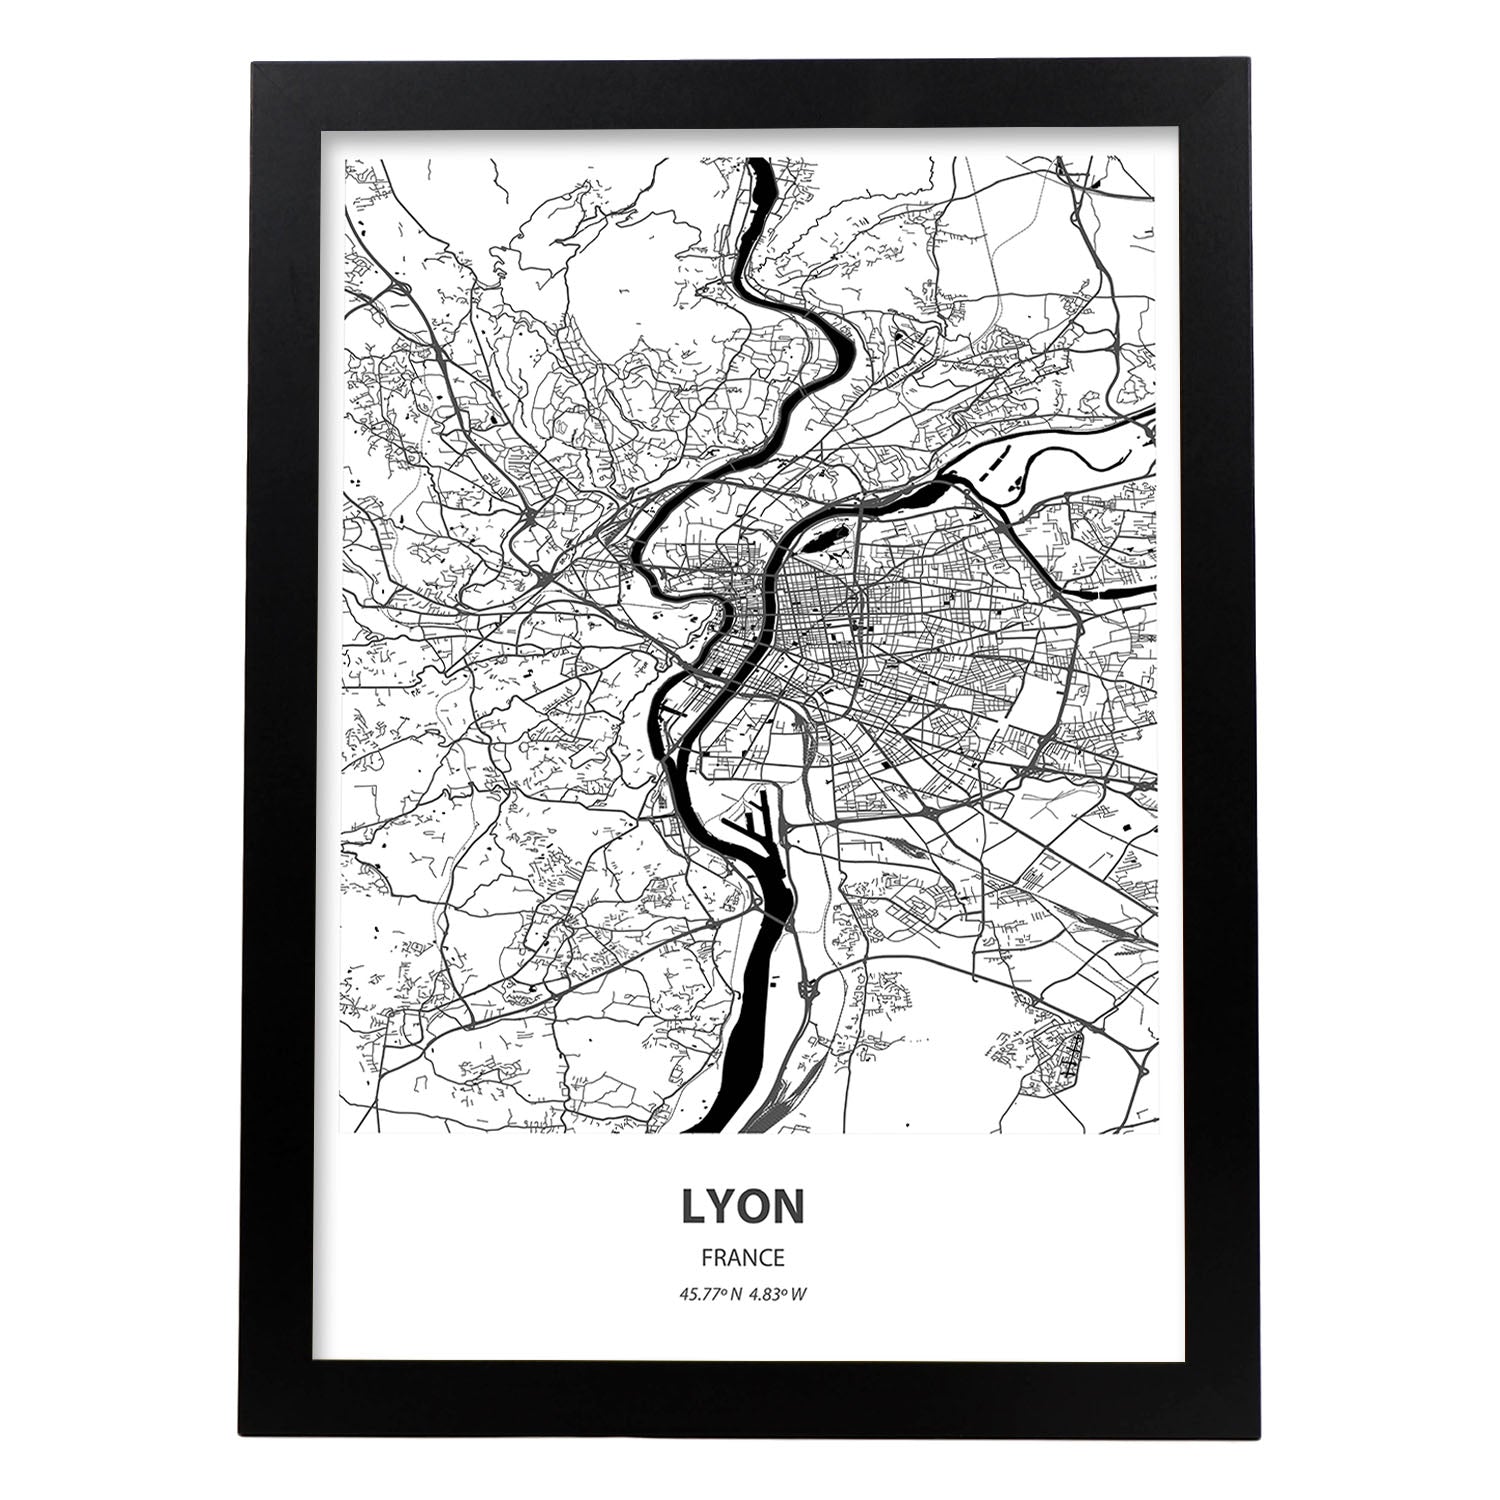 Poster con mapa de Lyon - Francia. Láminas de ciudades de Francia con mares y ríos en color negro.-Artwork-Nacnic-A3-Marco Negro-Nacnic Estudio SL